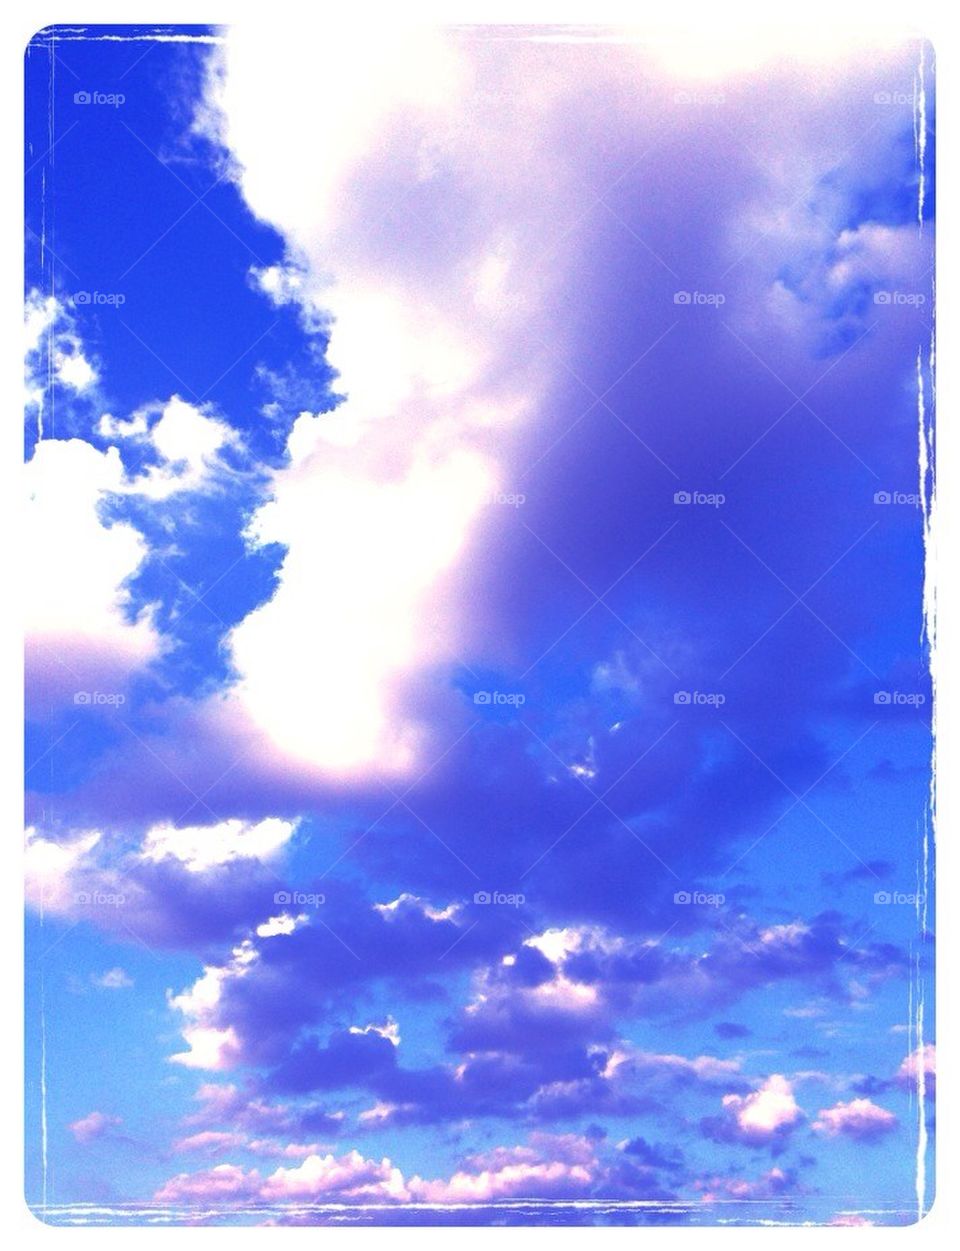 Clouds in a blue sky